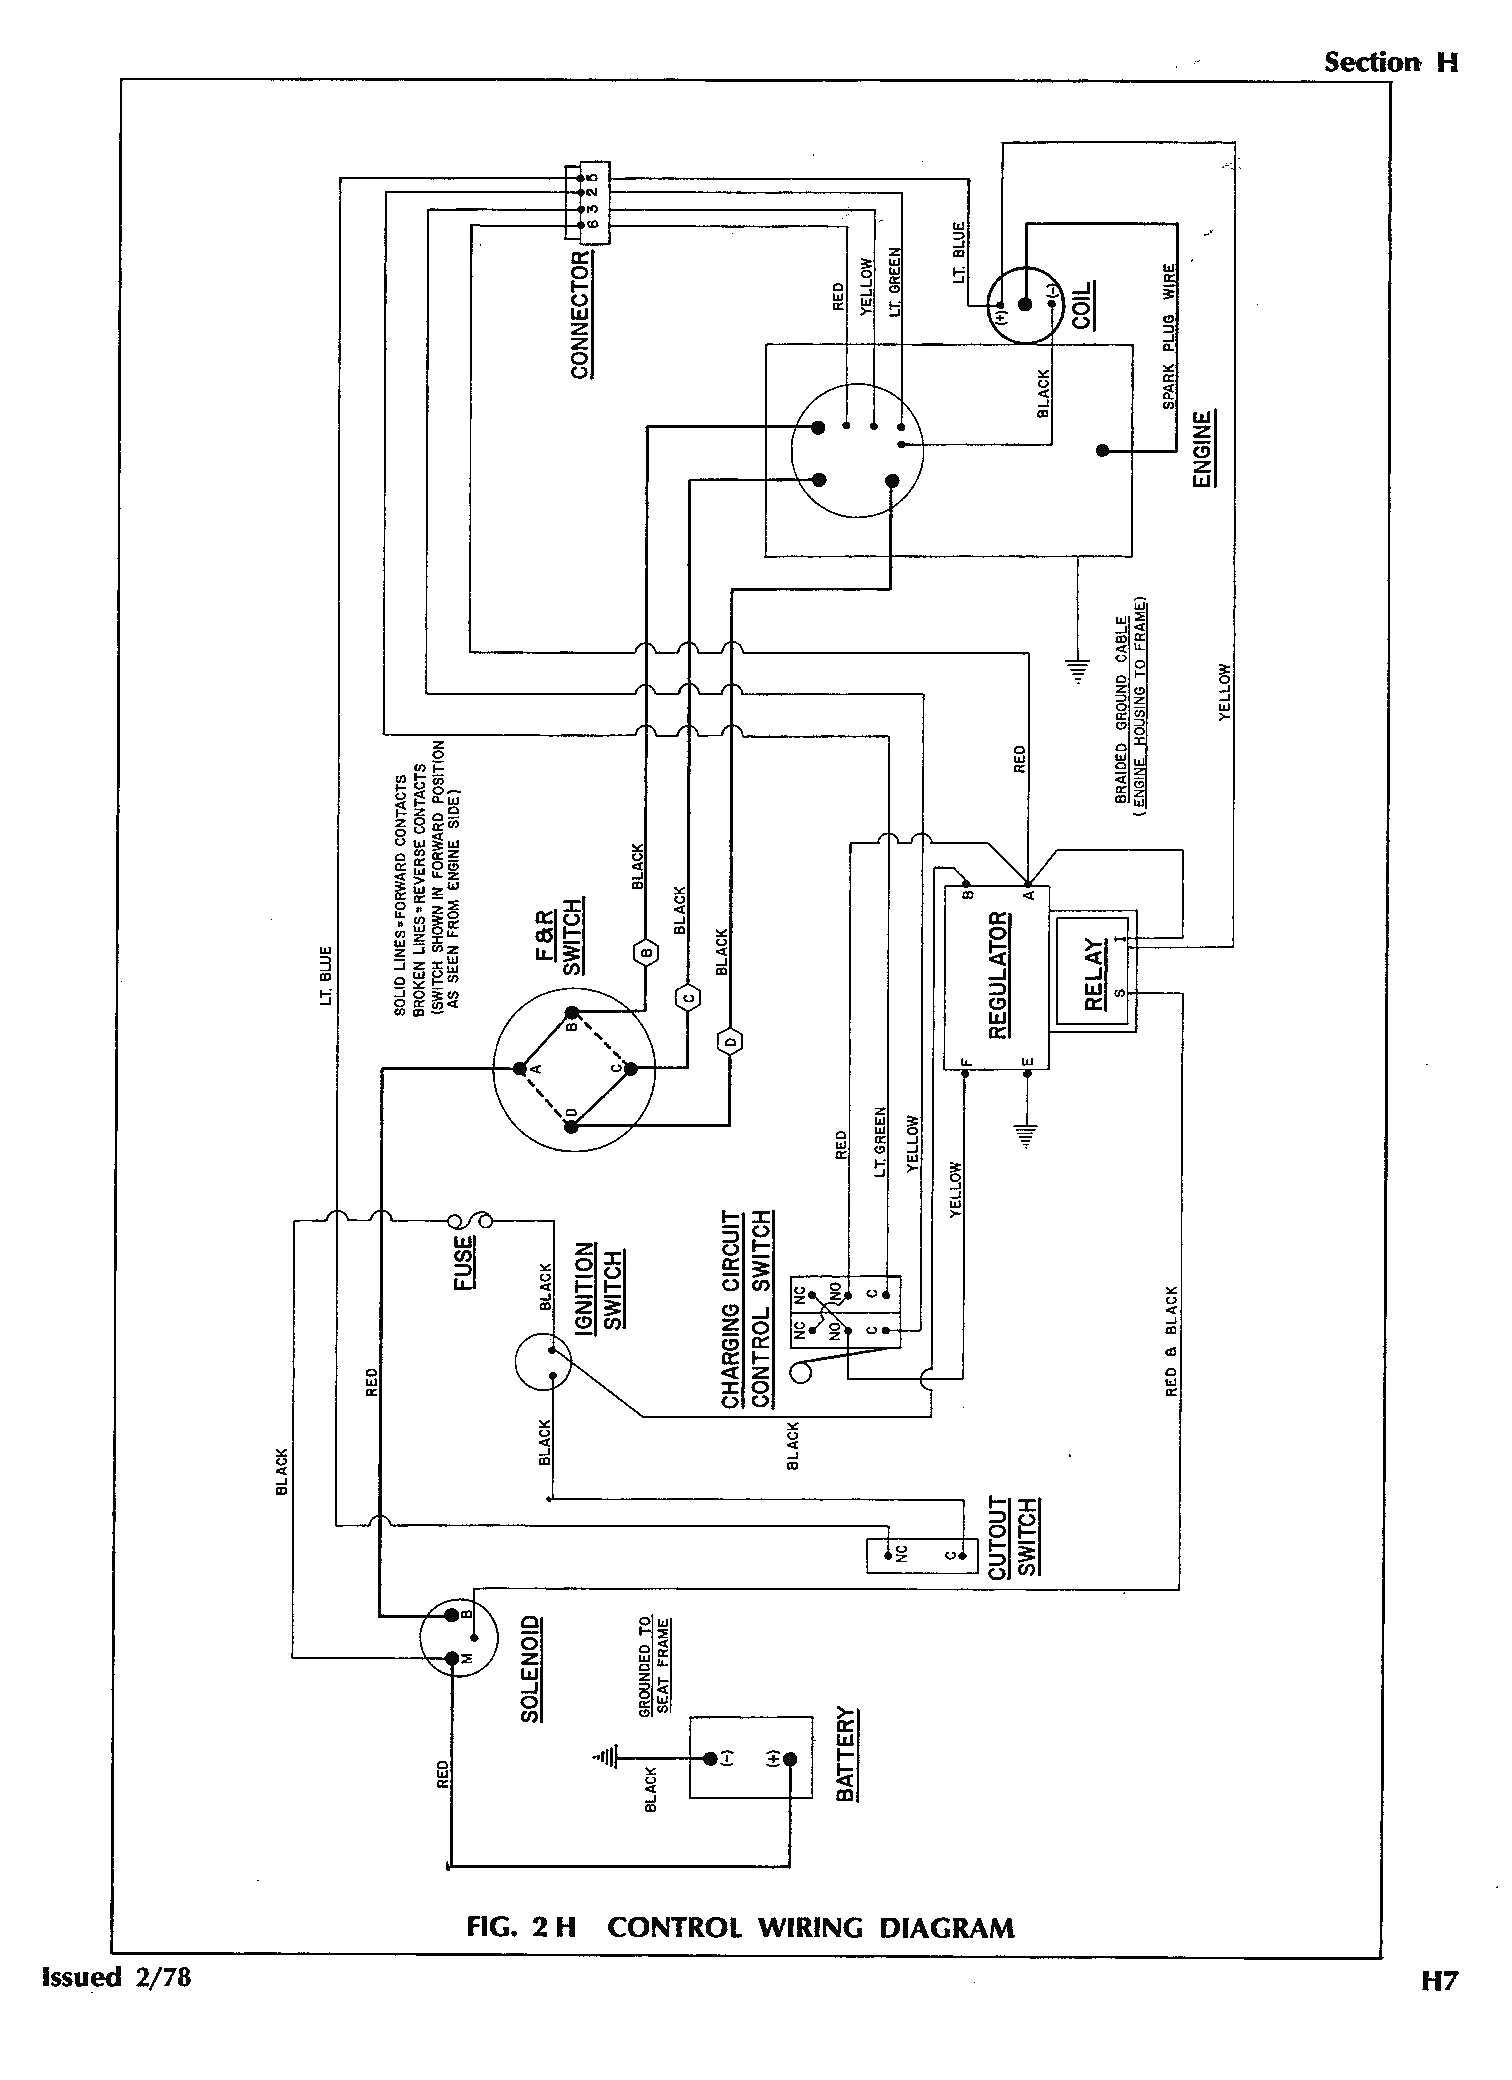 1976 ezgo wiring diagram data schematic diagram 1976 ezgo golf cart gas engine wiring diagram